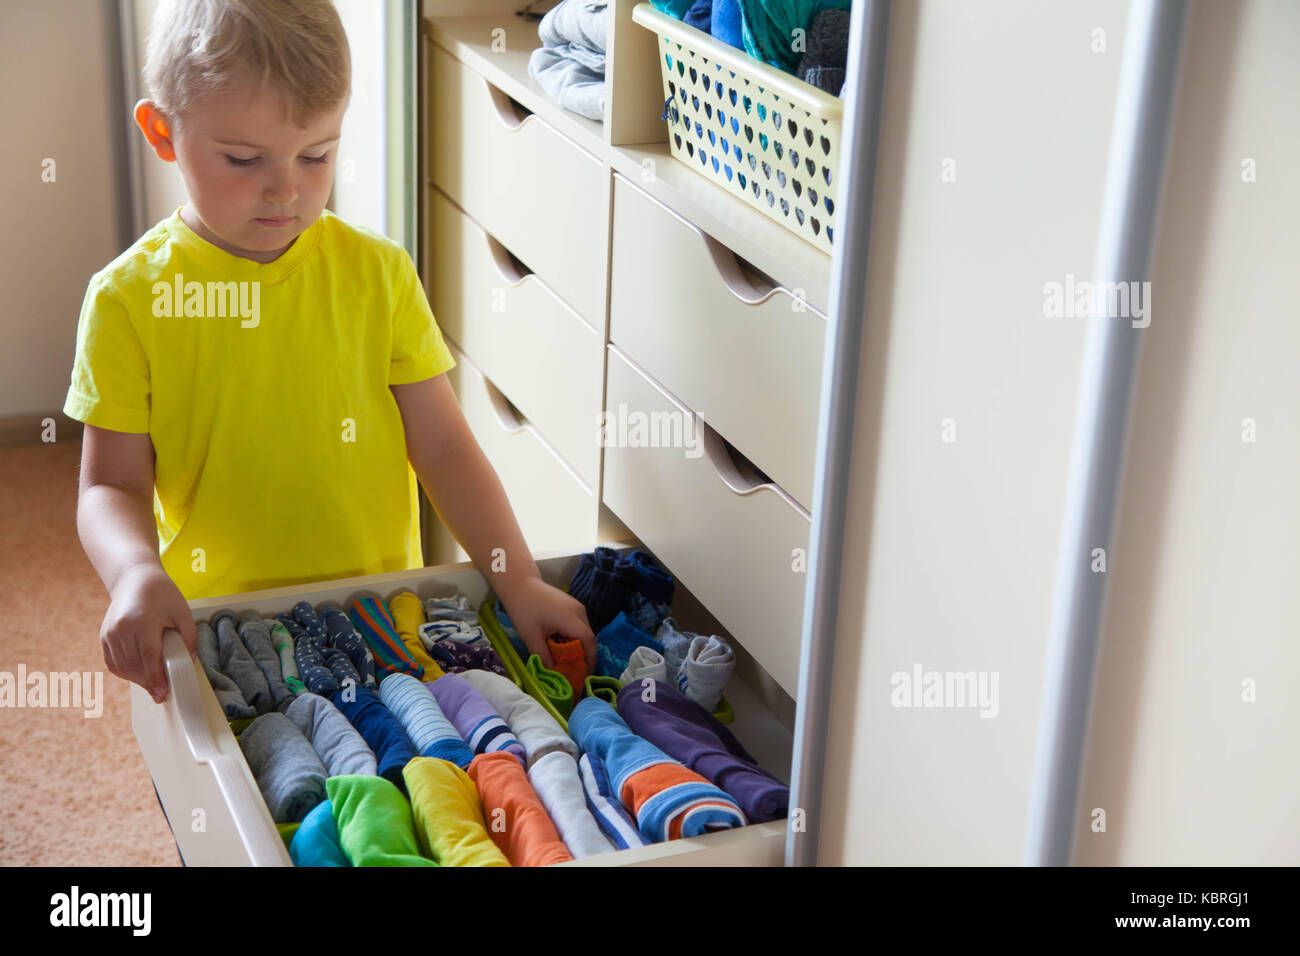 Снимают по 1 вещи. Ребенок складывает одежду. Ребенок складывает вещи в шкаф. Мальчик складывает одежду. Дети раскладывают вещи.